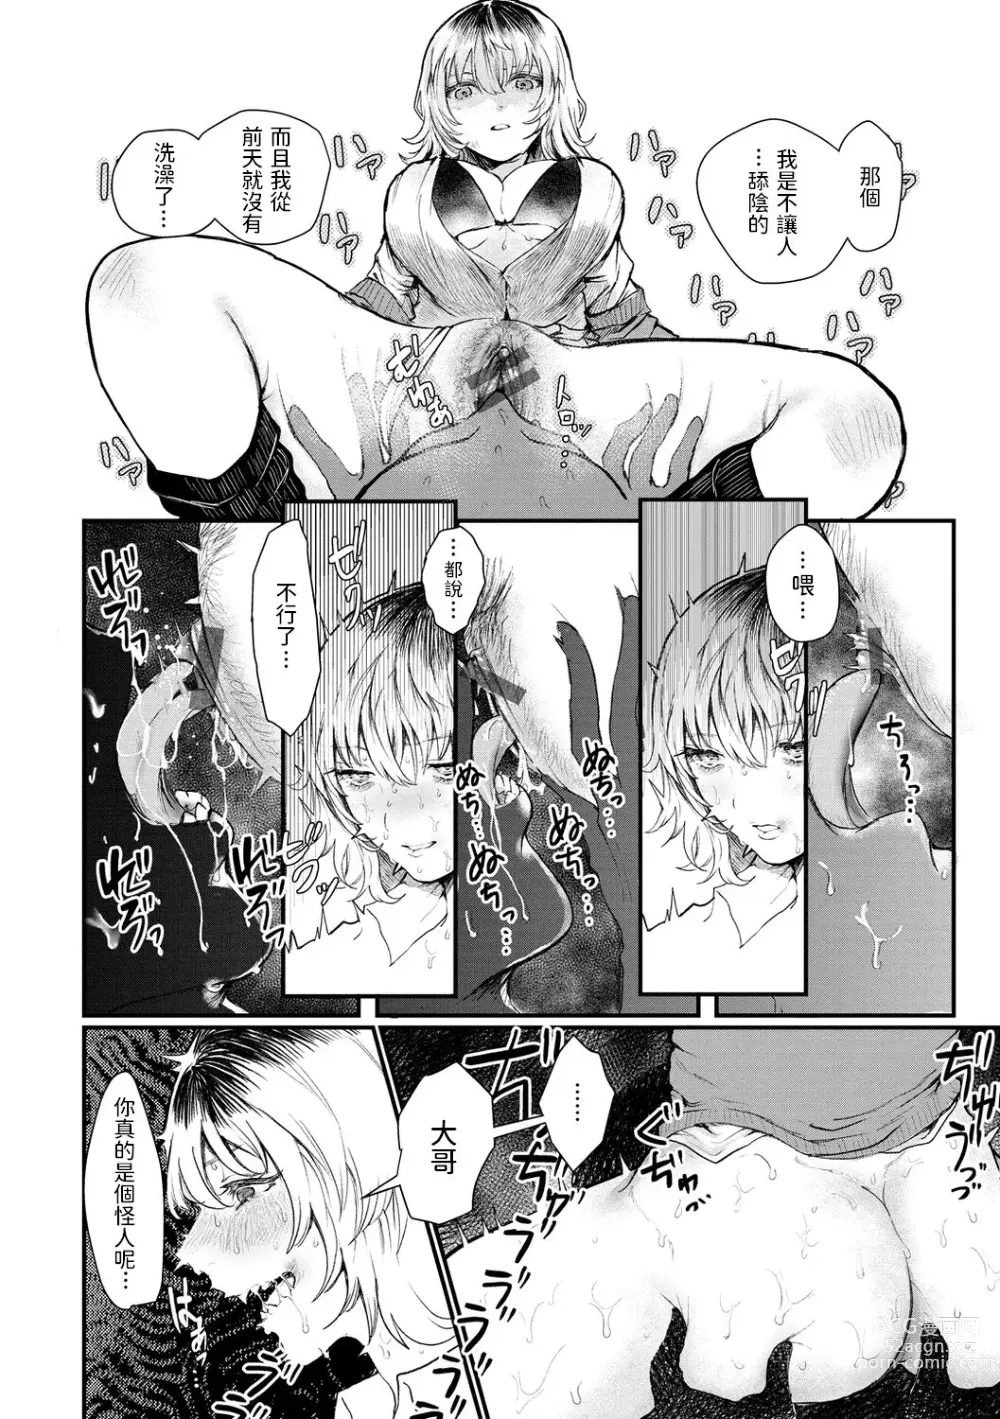 Page 8 of manga Pureless